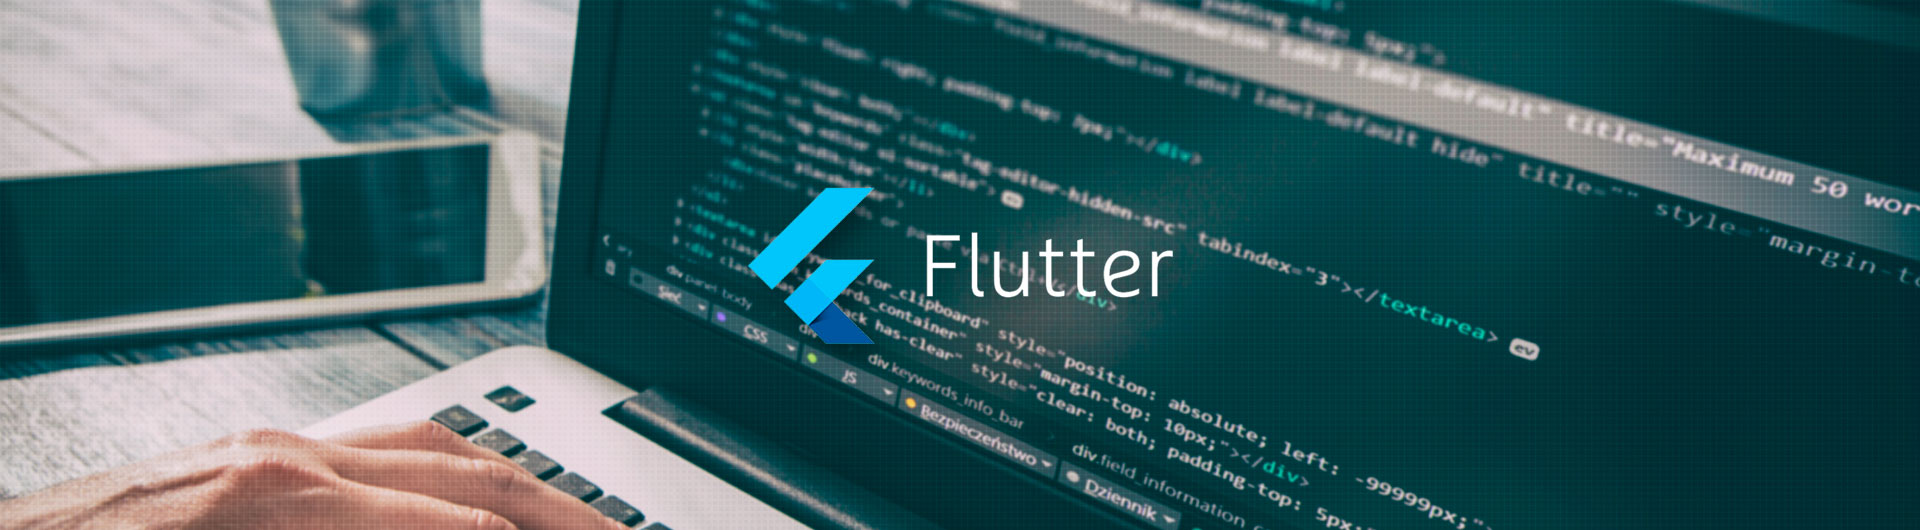 Flutter™ Application Development